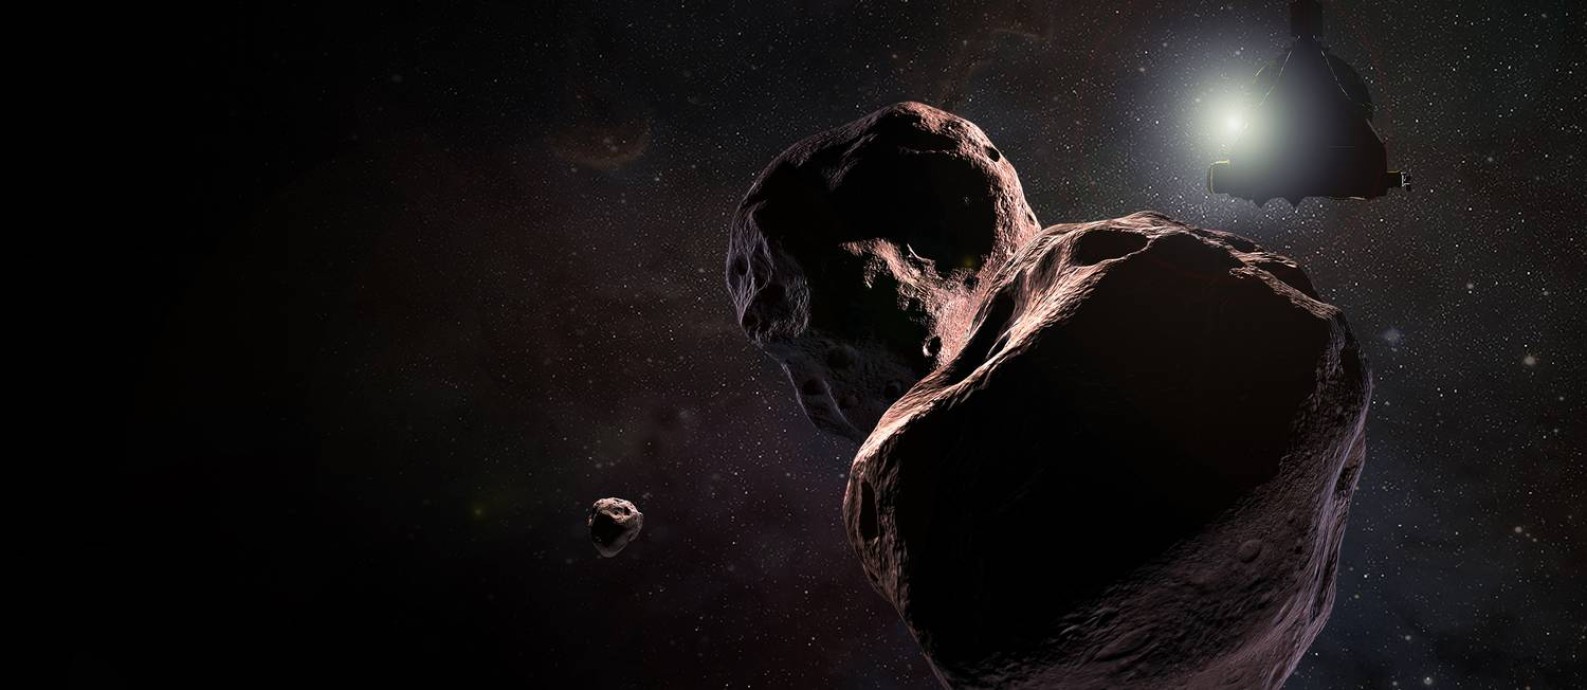 Ilustração da Nasa mostra a sonda New Horizons sobrevoando o planeta anão Ultima Thule Foto: NASA/JHUAPL/SWRI / NASA/JHUAPL/SWRI